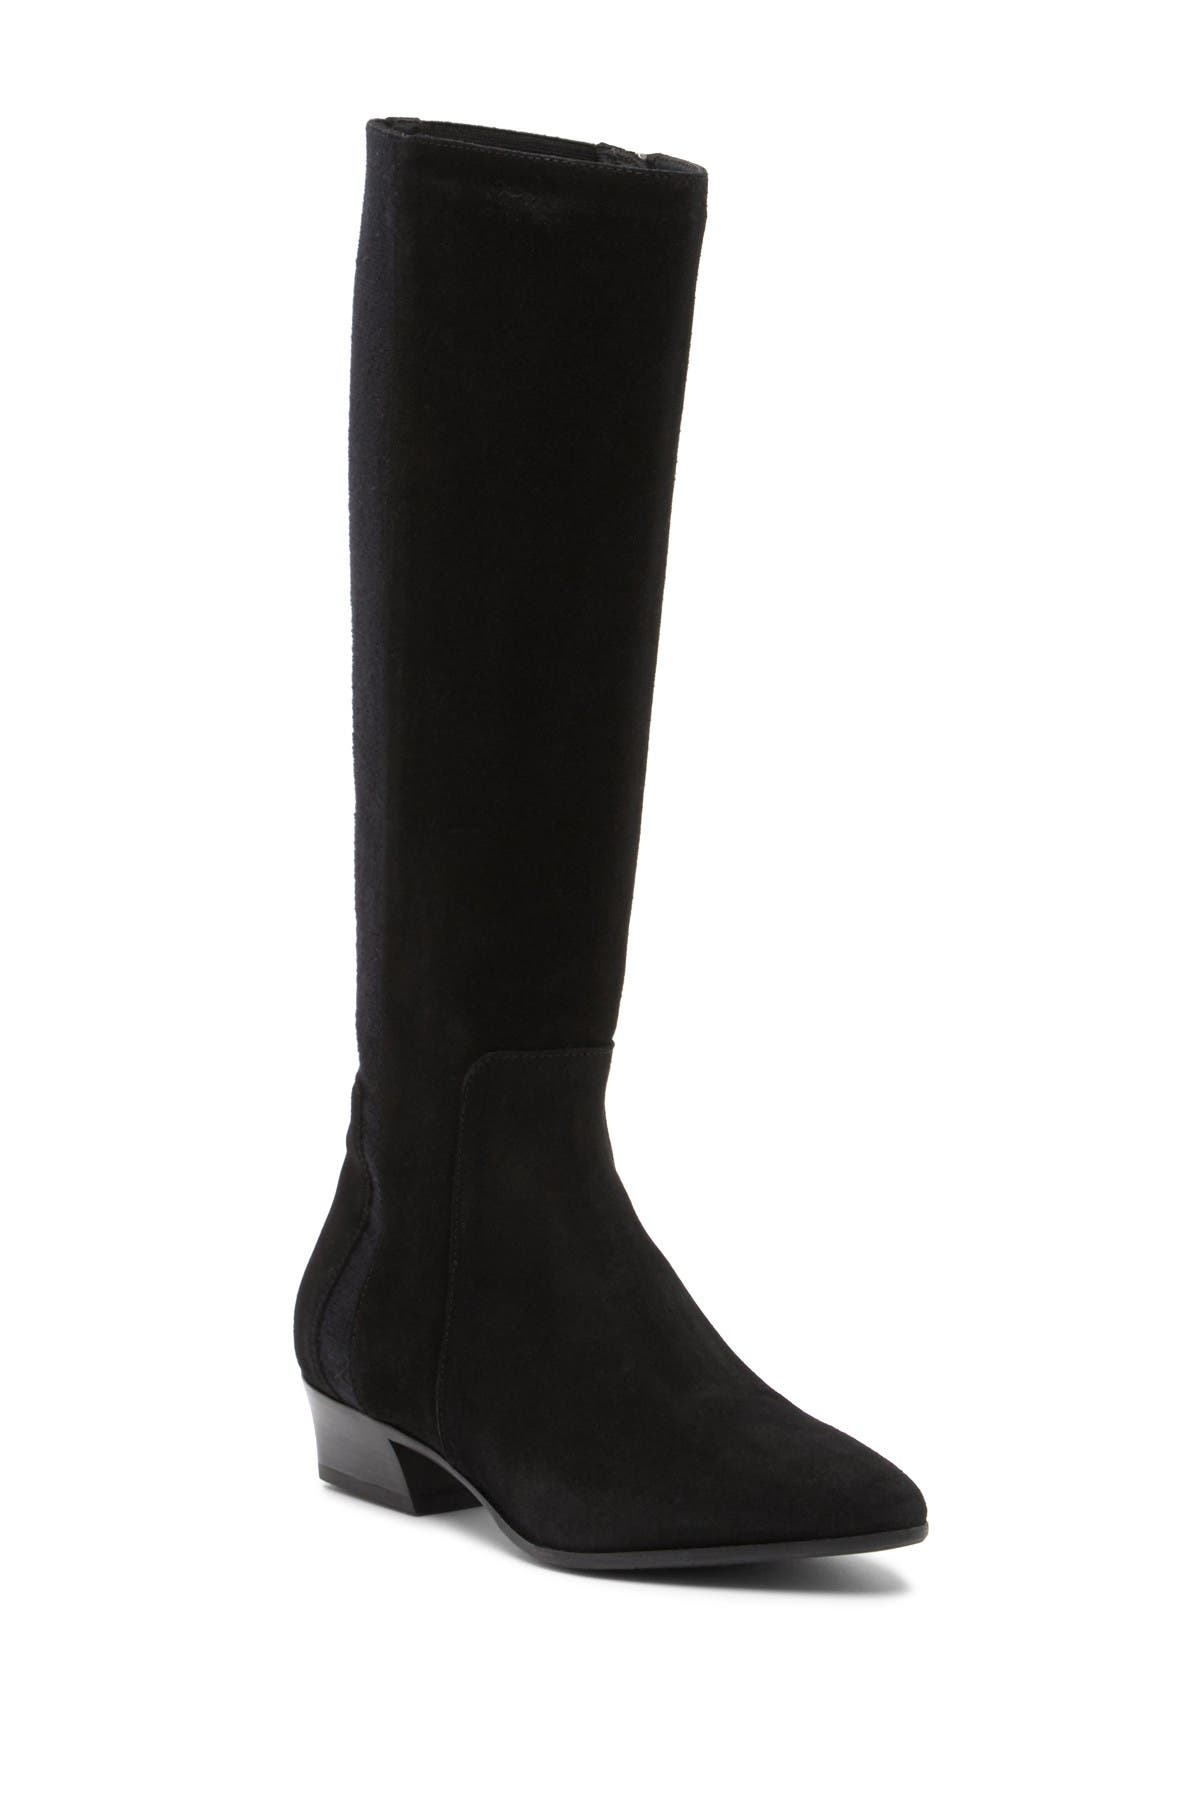 aquatalia knee high boots